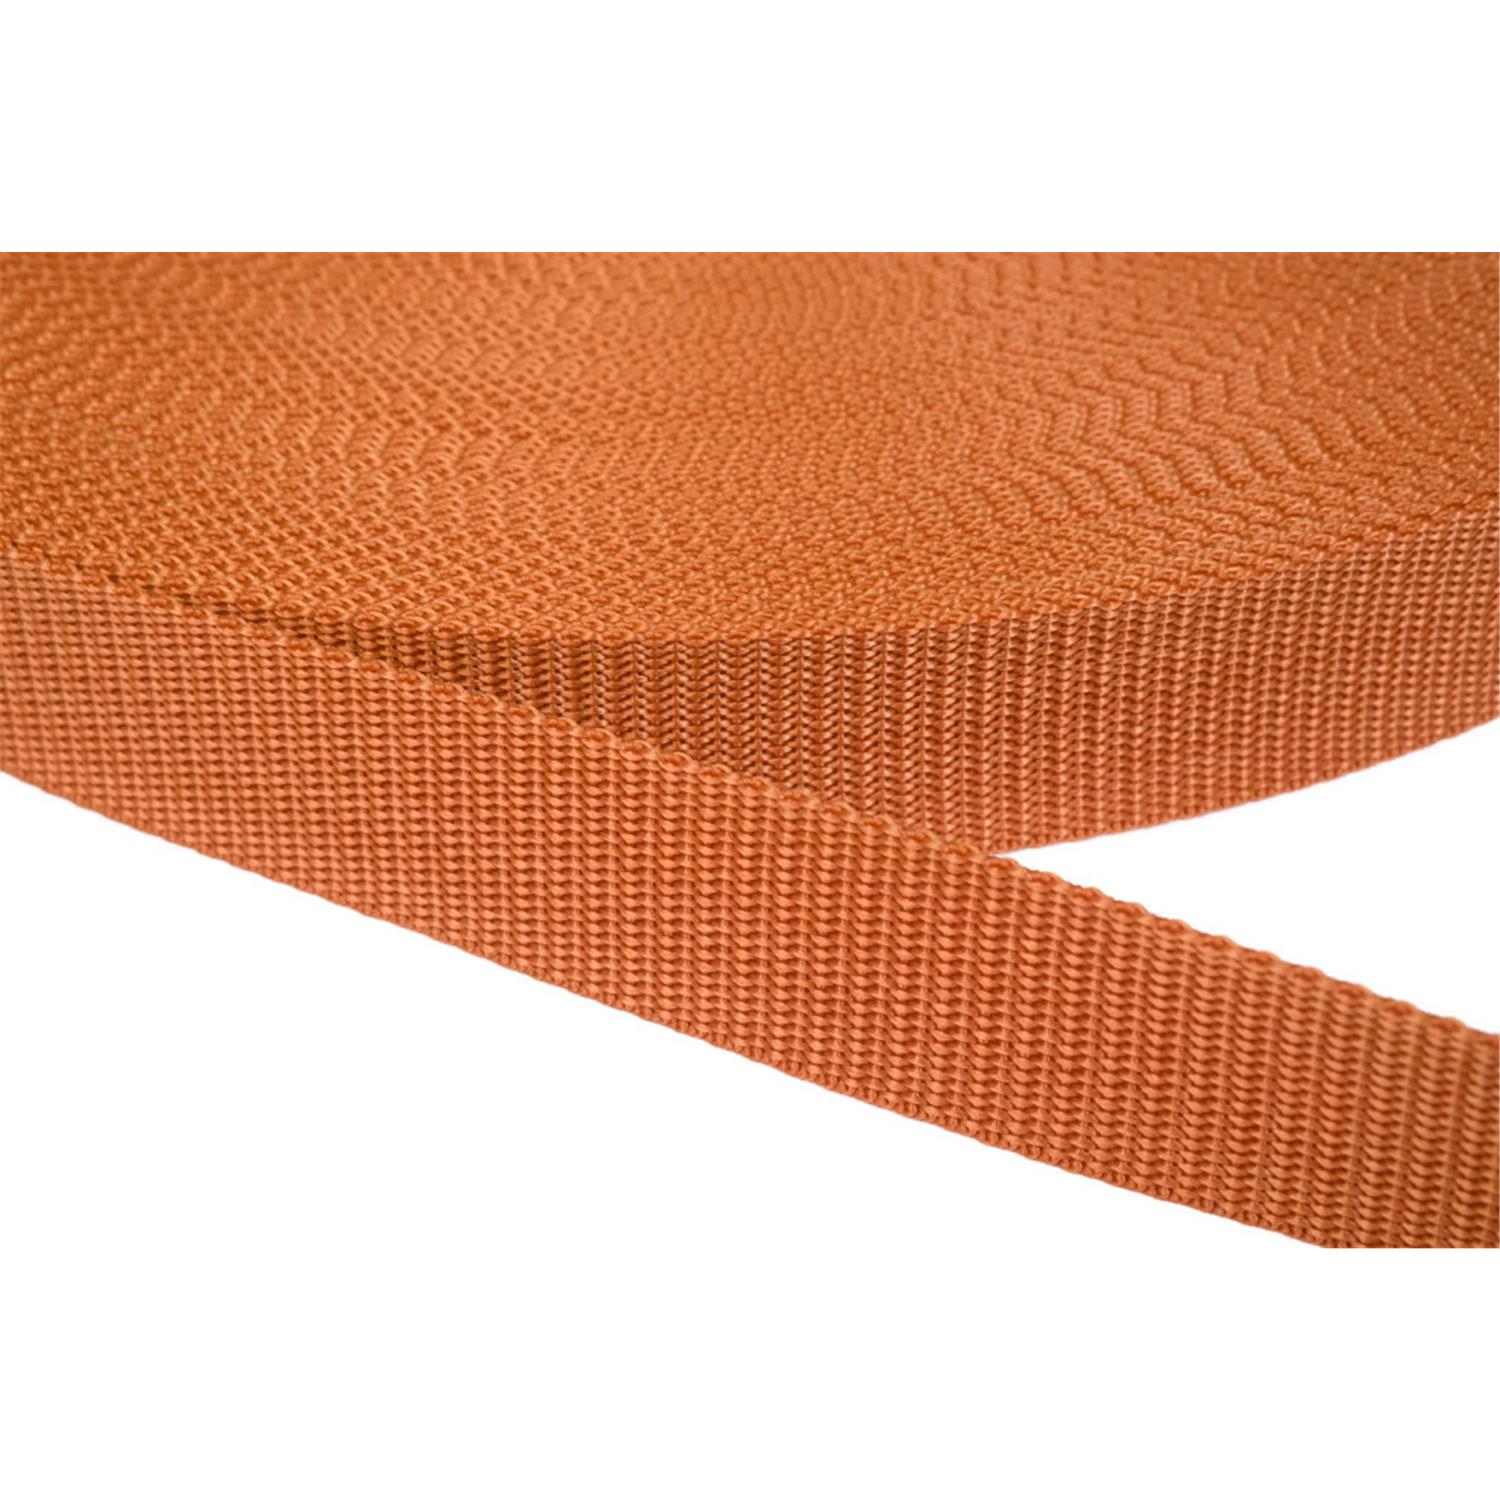 Gurtband 25mm breit aus Polypropylen in 41 Farben 05 - ockerbraun 50 Meter